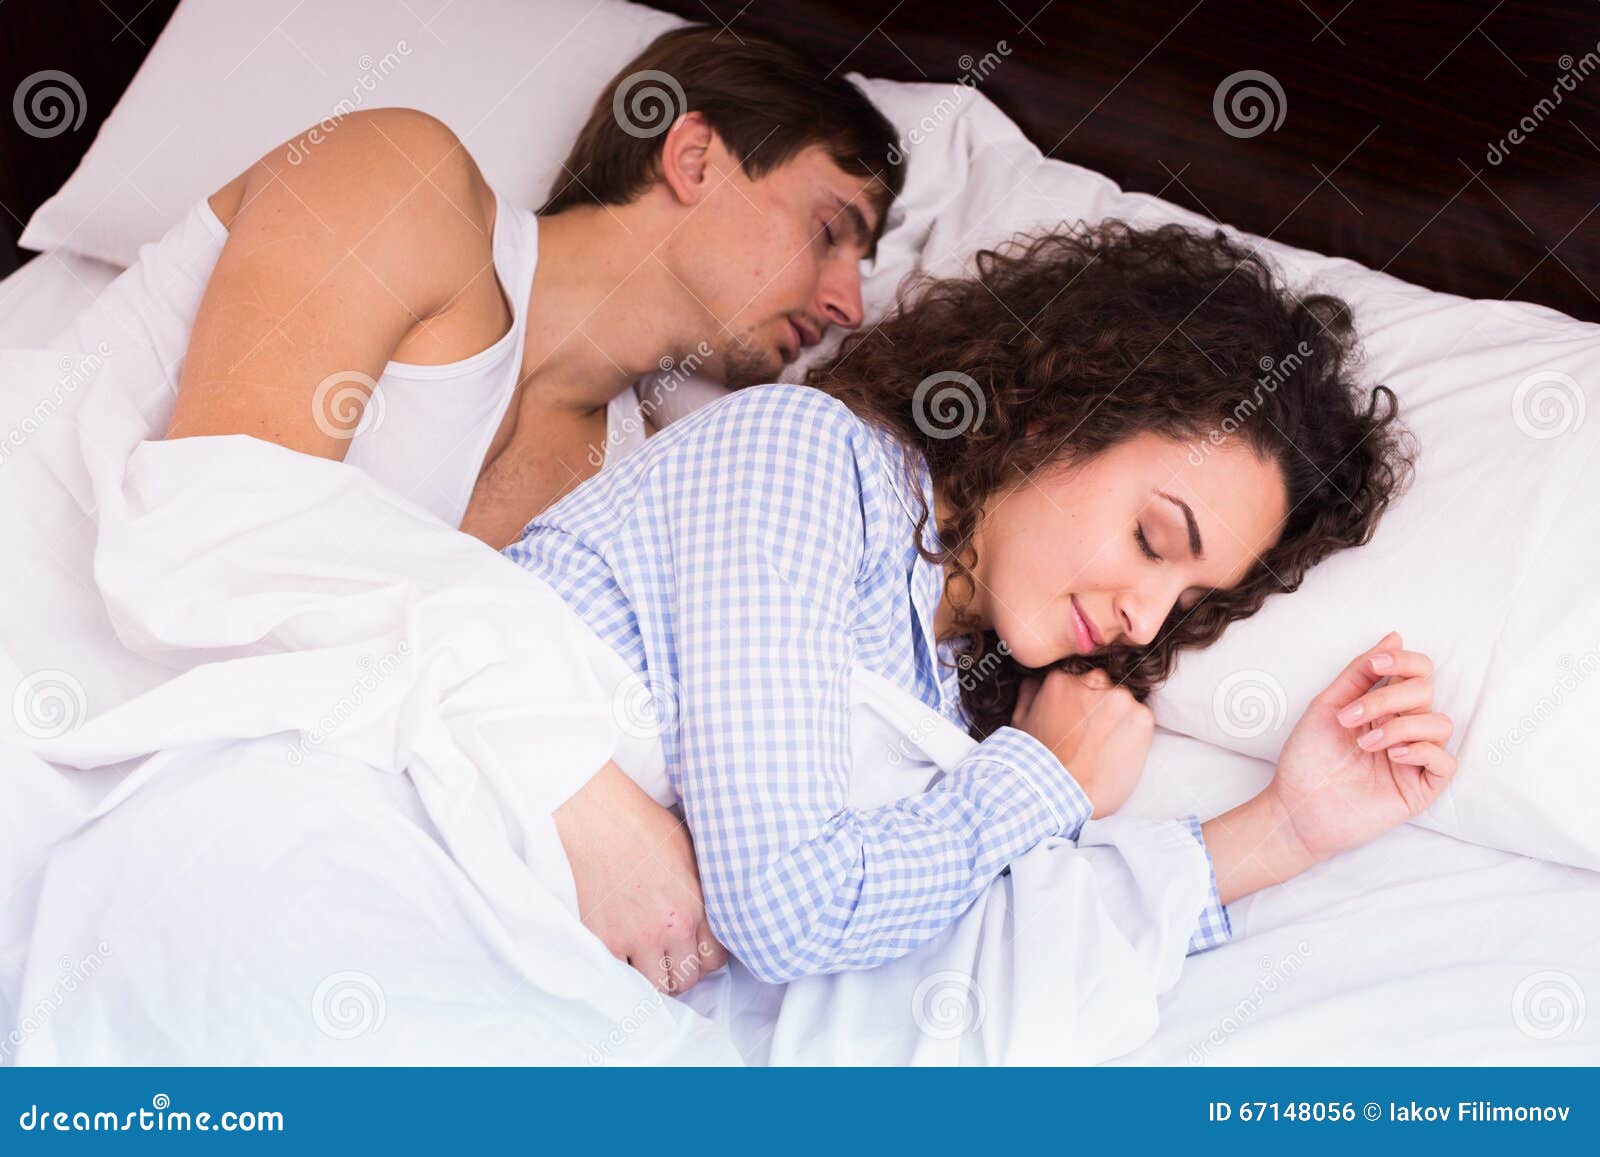 Про спящую жену. Молодая жена в постели. Молодые жены спят. Молодые муж и жена спят.